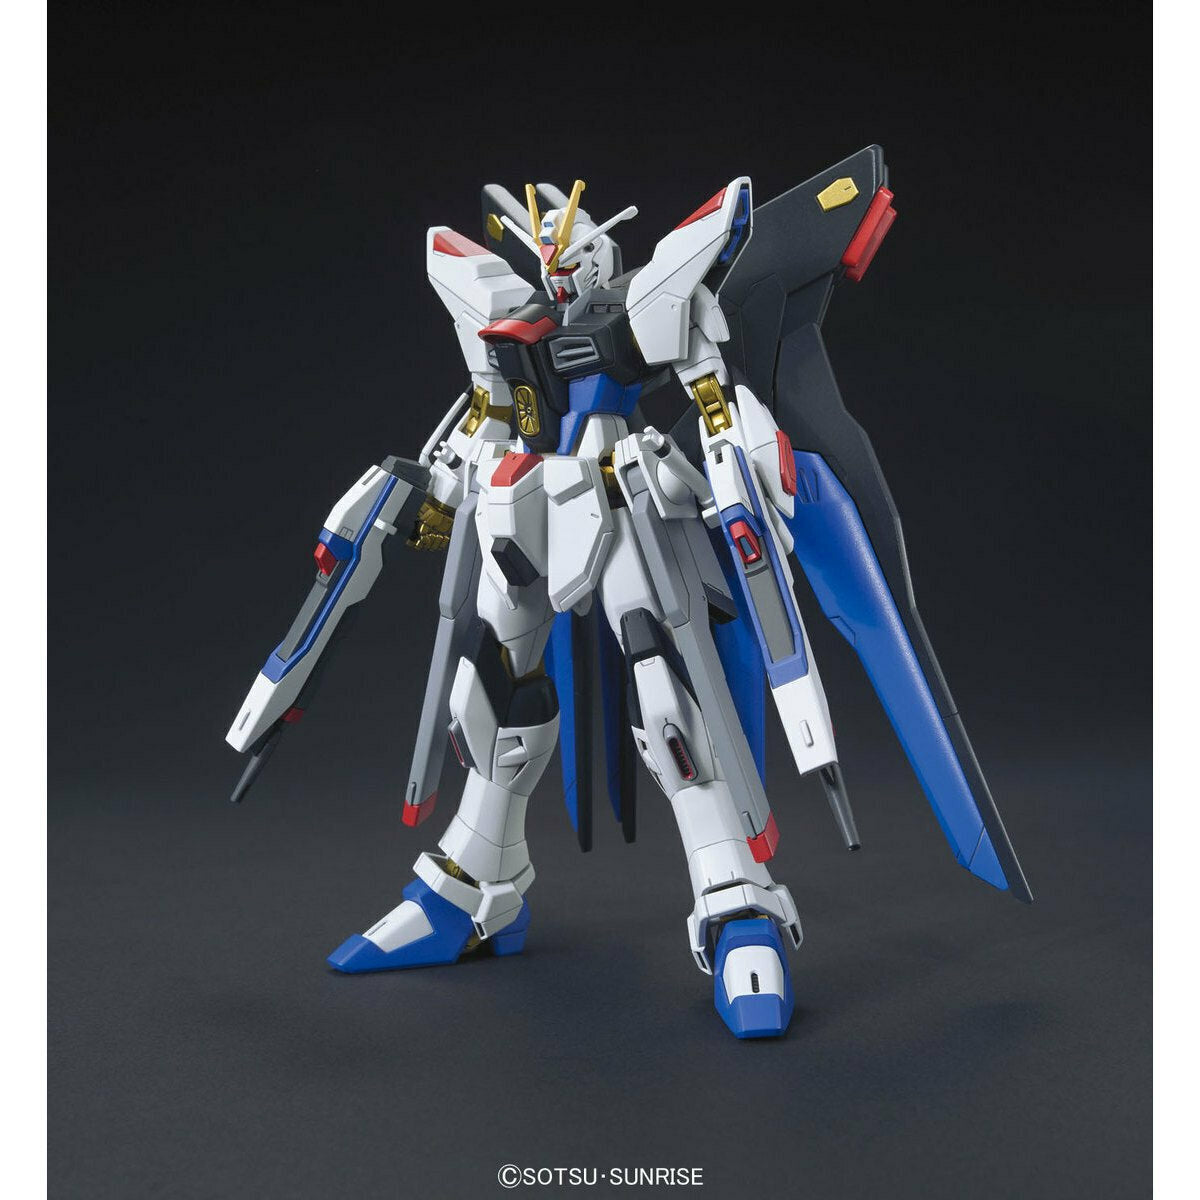 Bandai Hg 1/144 Strike Freedom Gundam